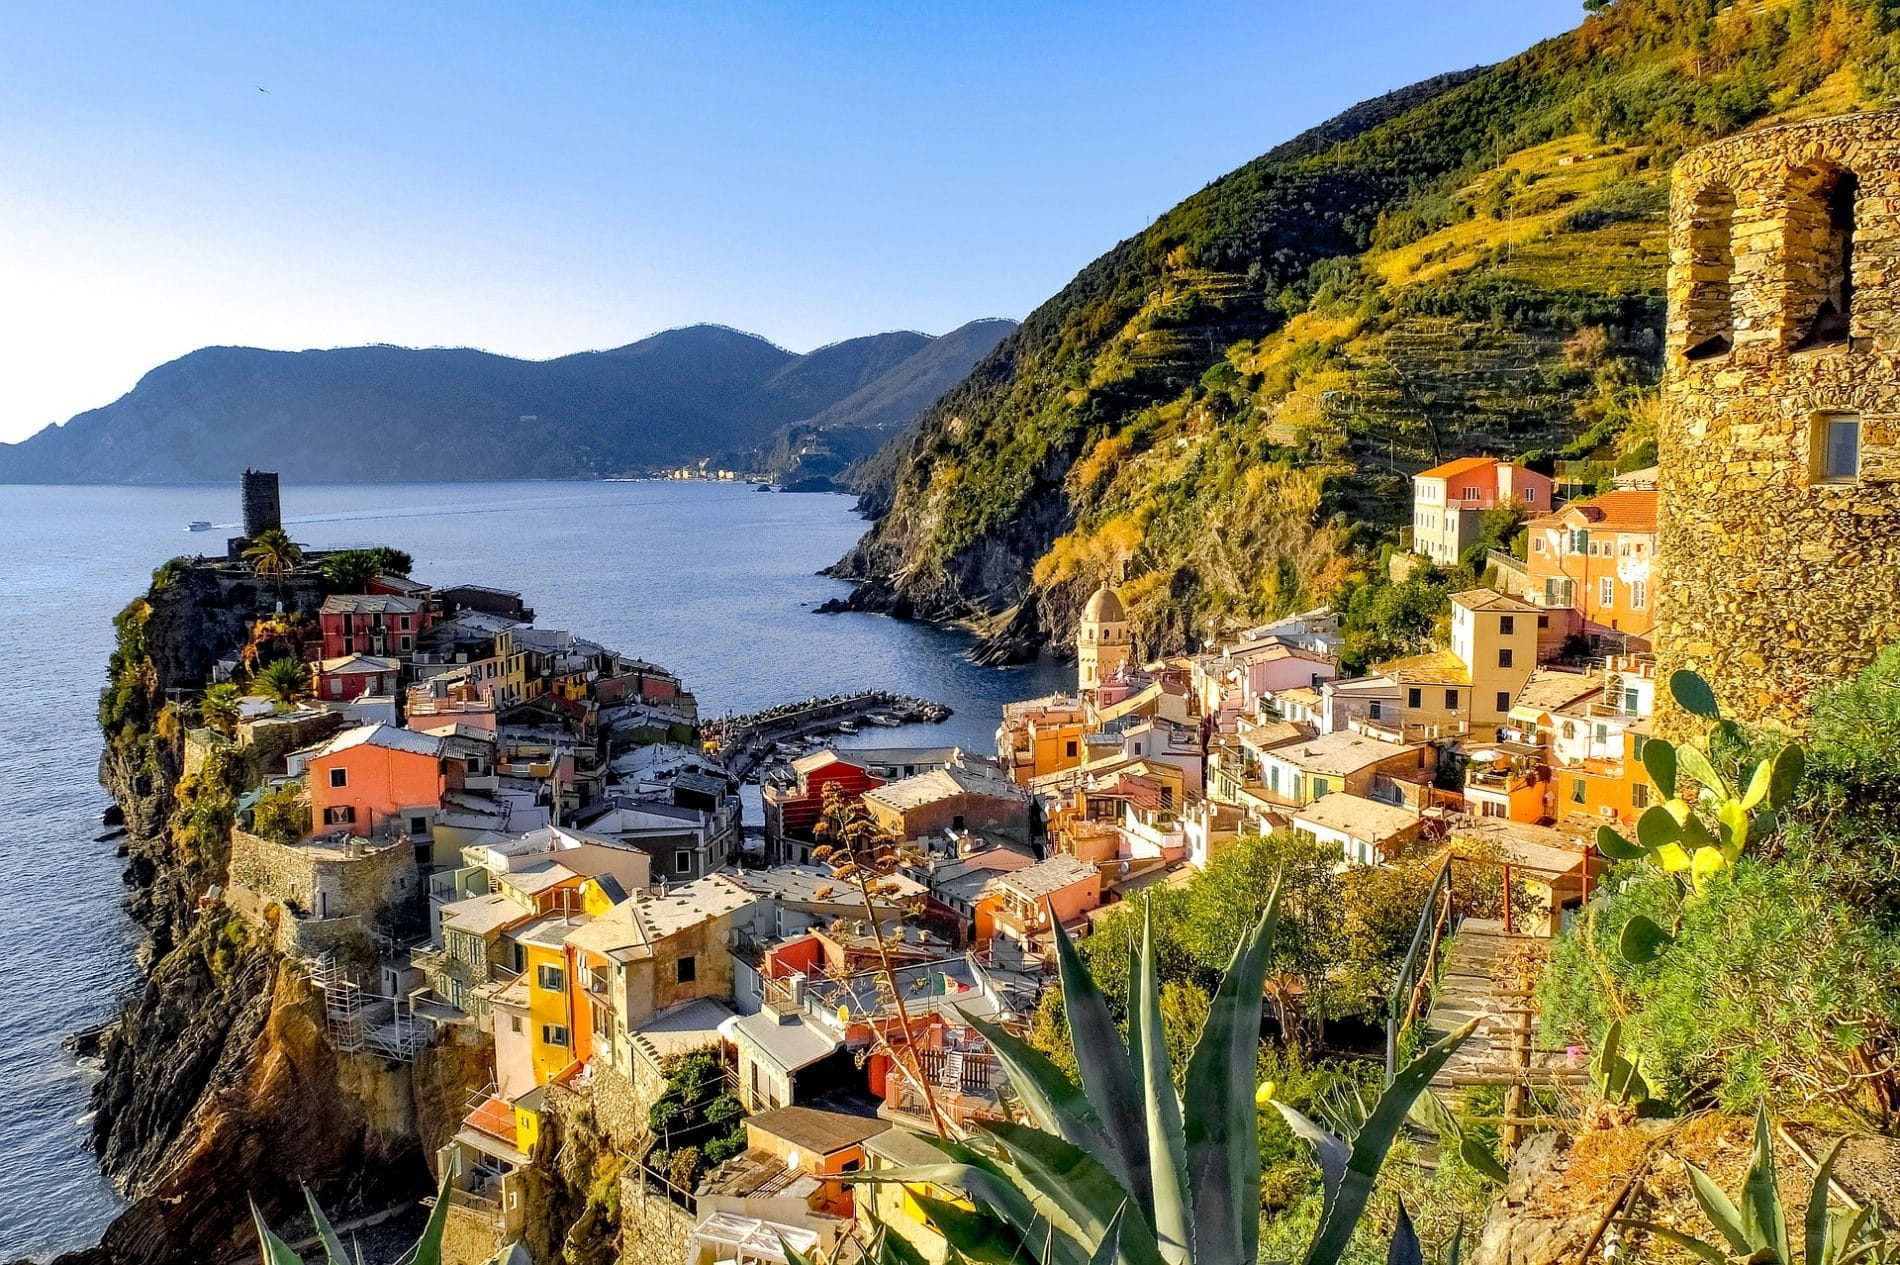 Cinq terre nos conseils pour visiter les villages perchés d italie